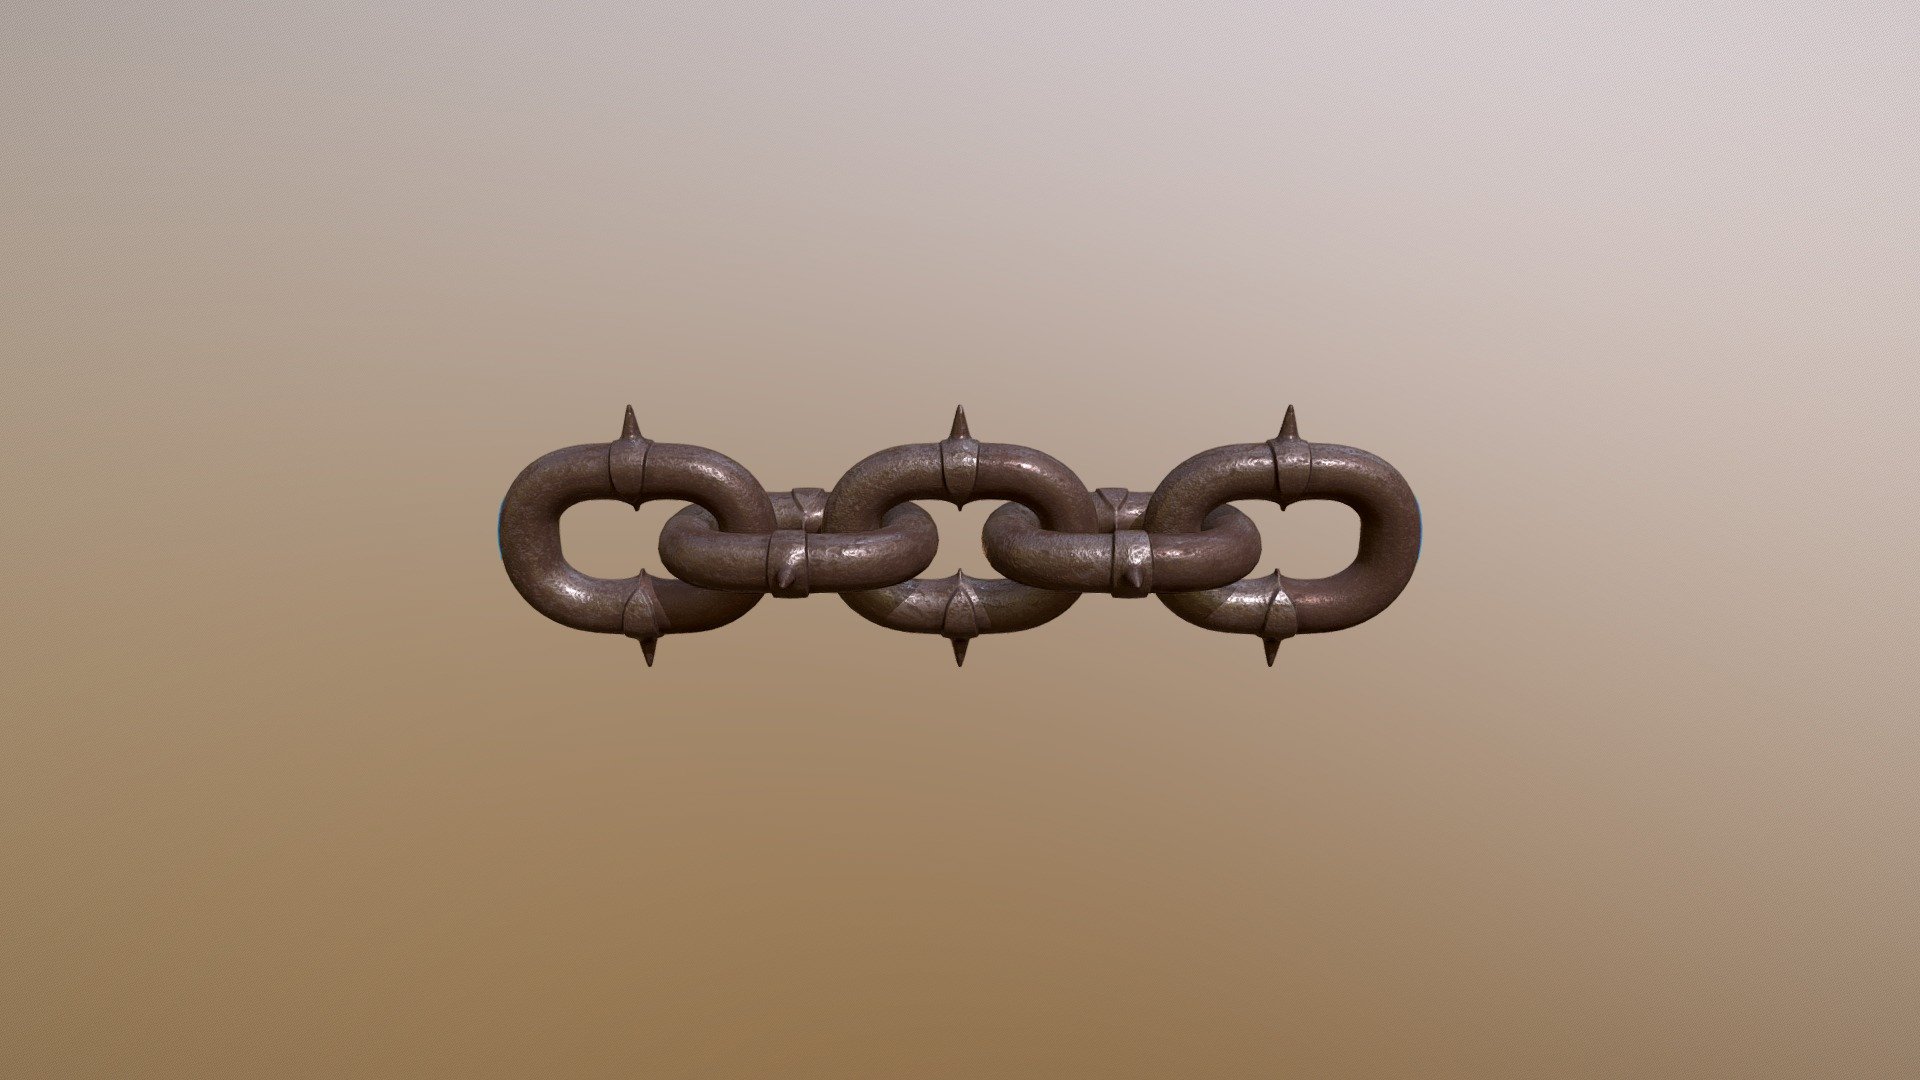 Spiky Chain